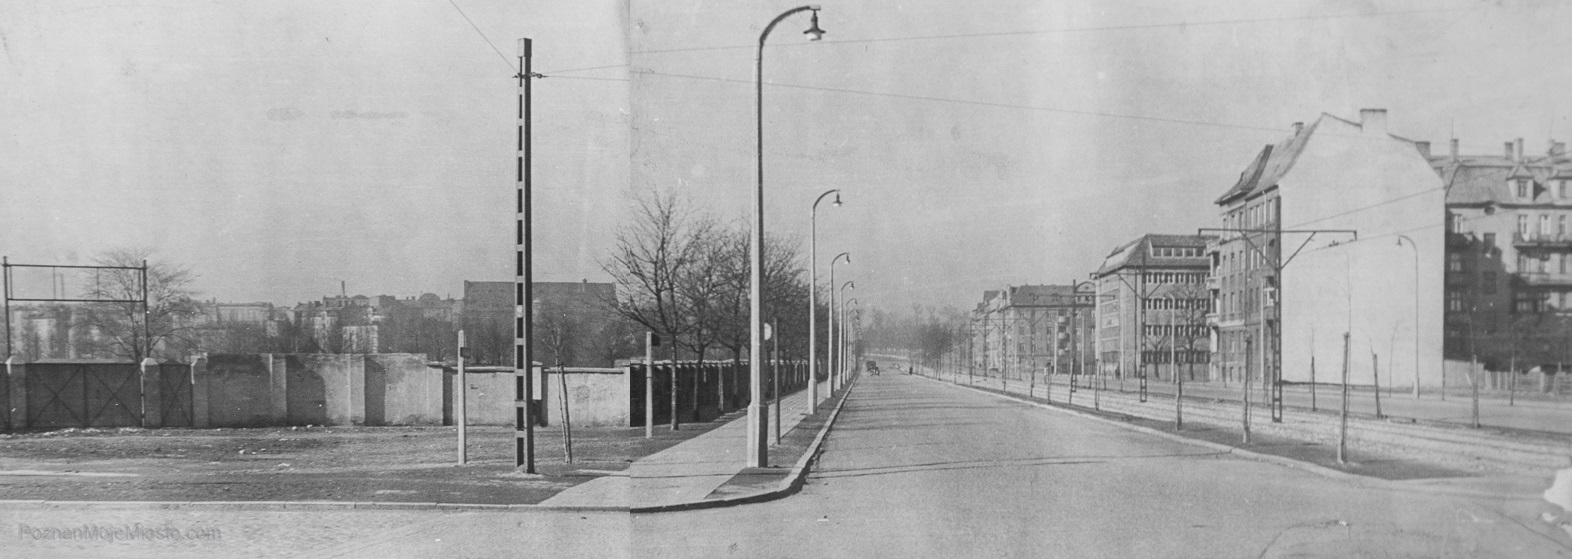 Linię tramwajową zbudowano w latach 1955-57. Widoczny Bastion Grolman oraz stajnie. Zwróćcie uwagę na dawny przebieg ulicy obok hotelu Poznań.